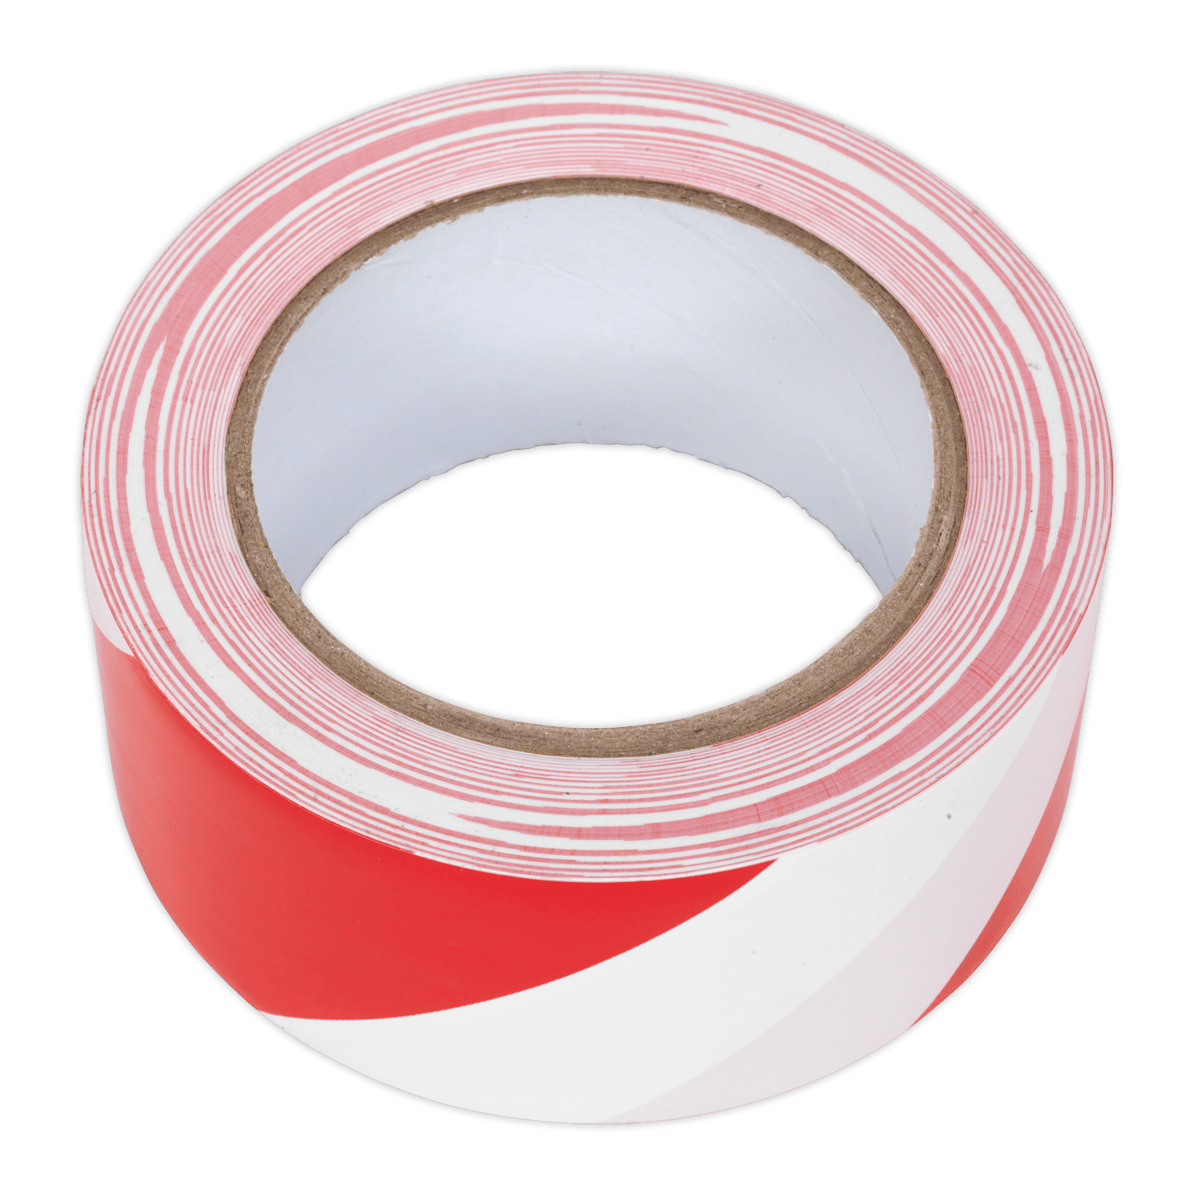 Sealey Hazard Warning Tape 50mm x 33m Red/White HWTRW